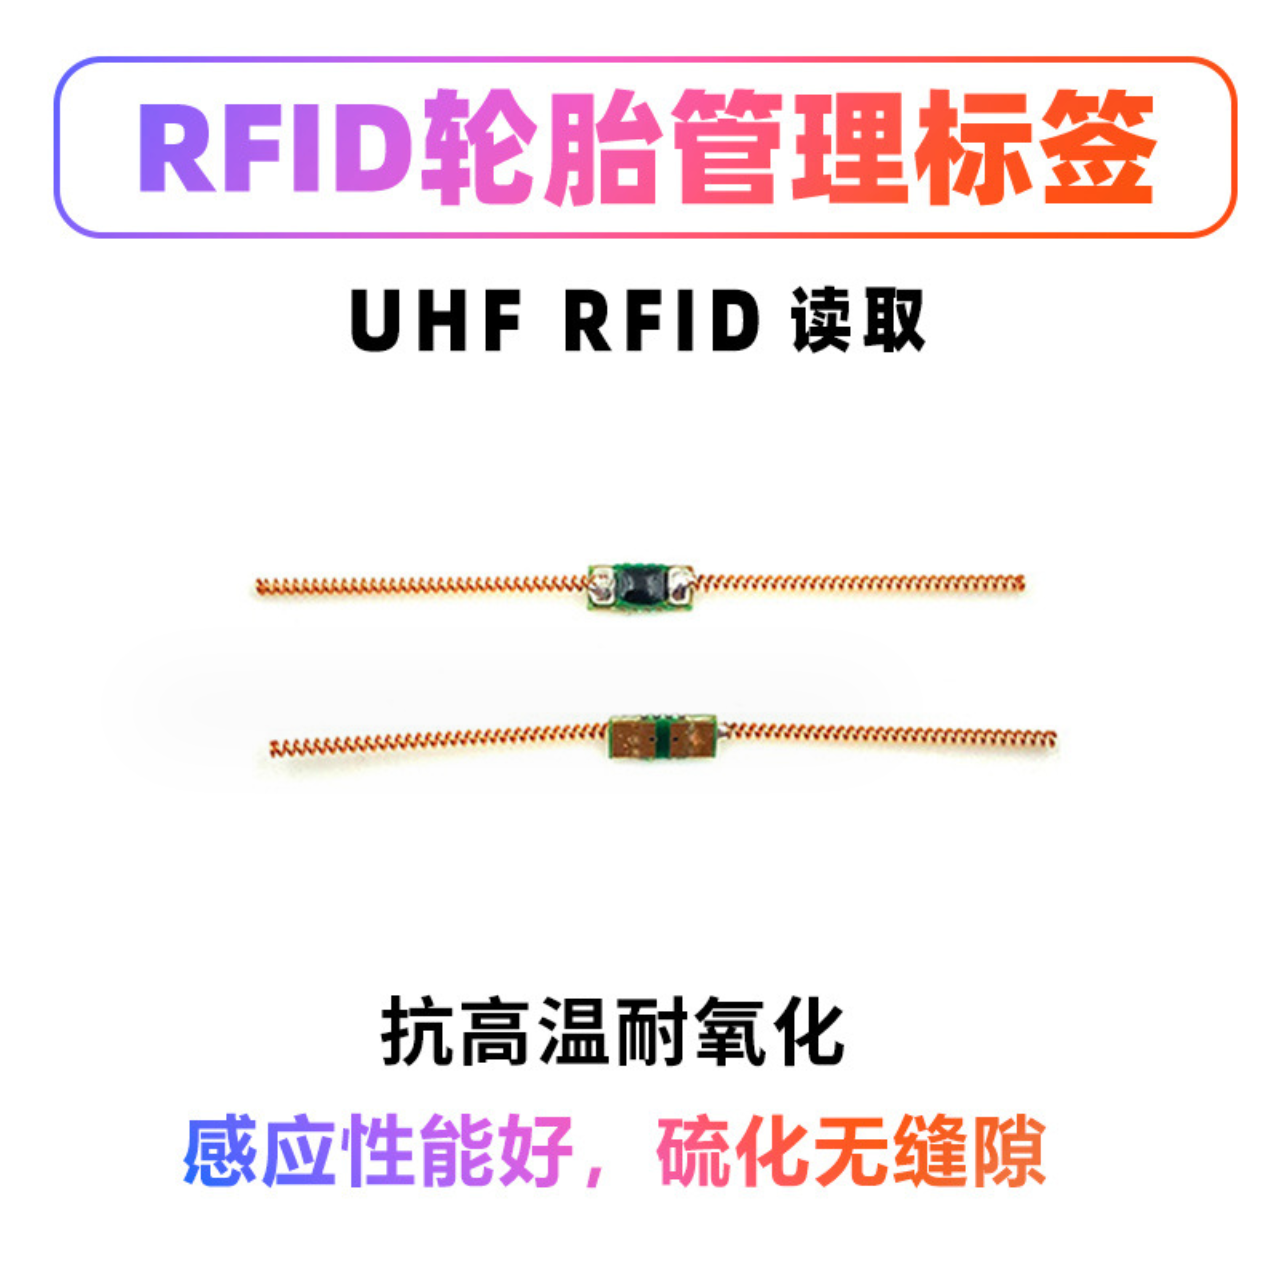 RFID超高频轮胎电子标签弹簧标签仓库物流信息化盘点追踪数字工厂图片